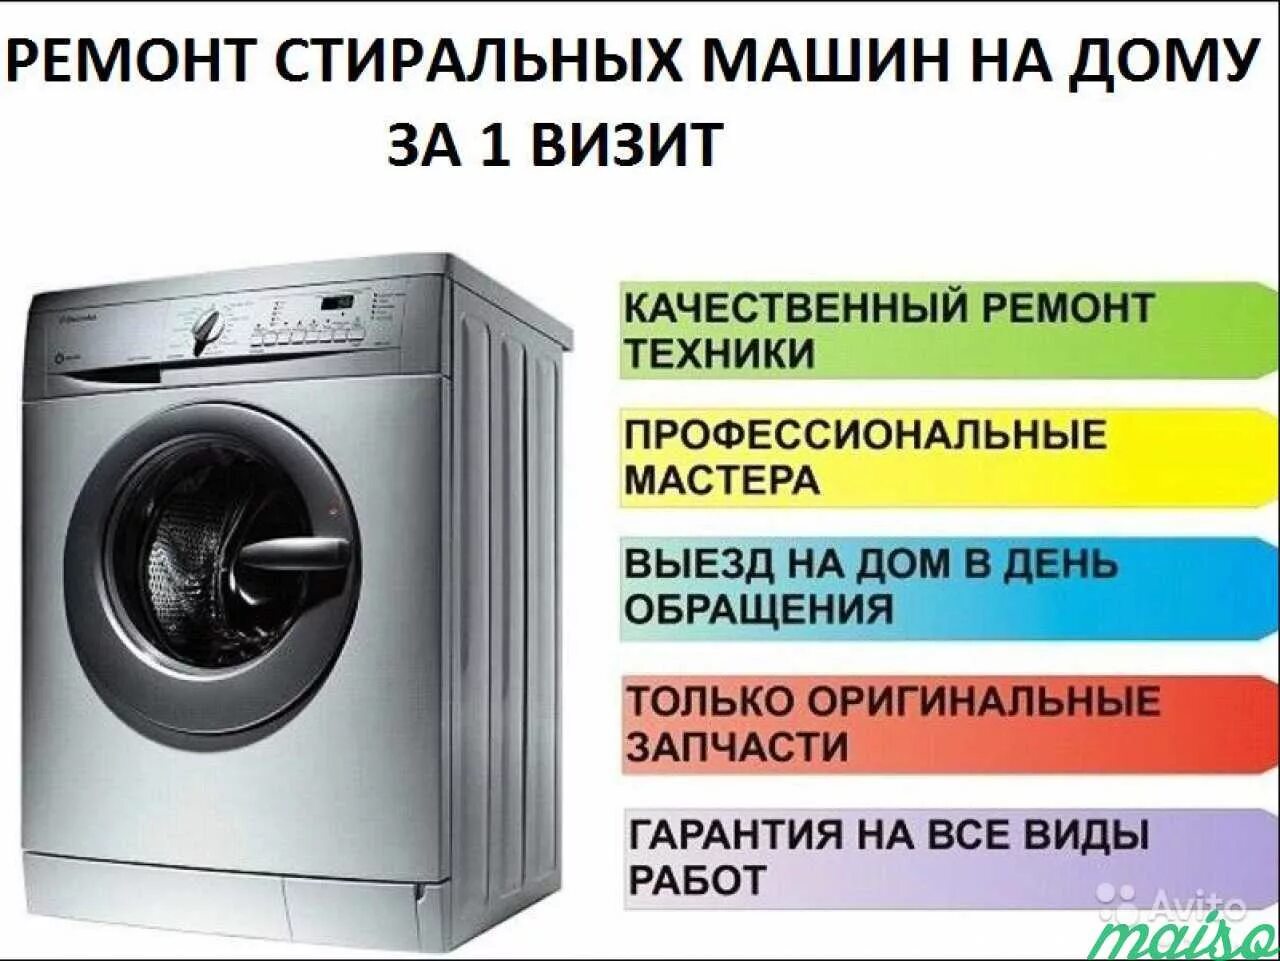 Ремонт стиральных машин с гарантией. Ремонт стиральных машин. Объявления по ремонту стиральных машин. Визитка ремонт стиральных машин. Стиральная машина визитка.